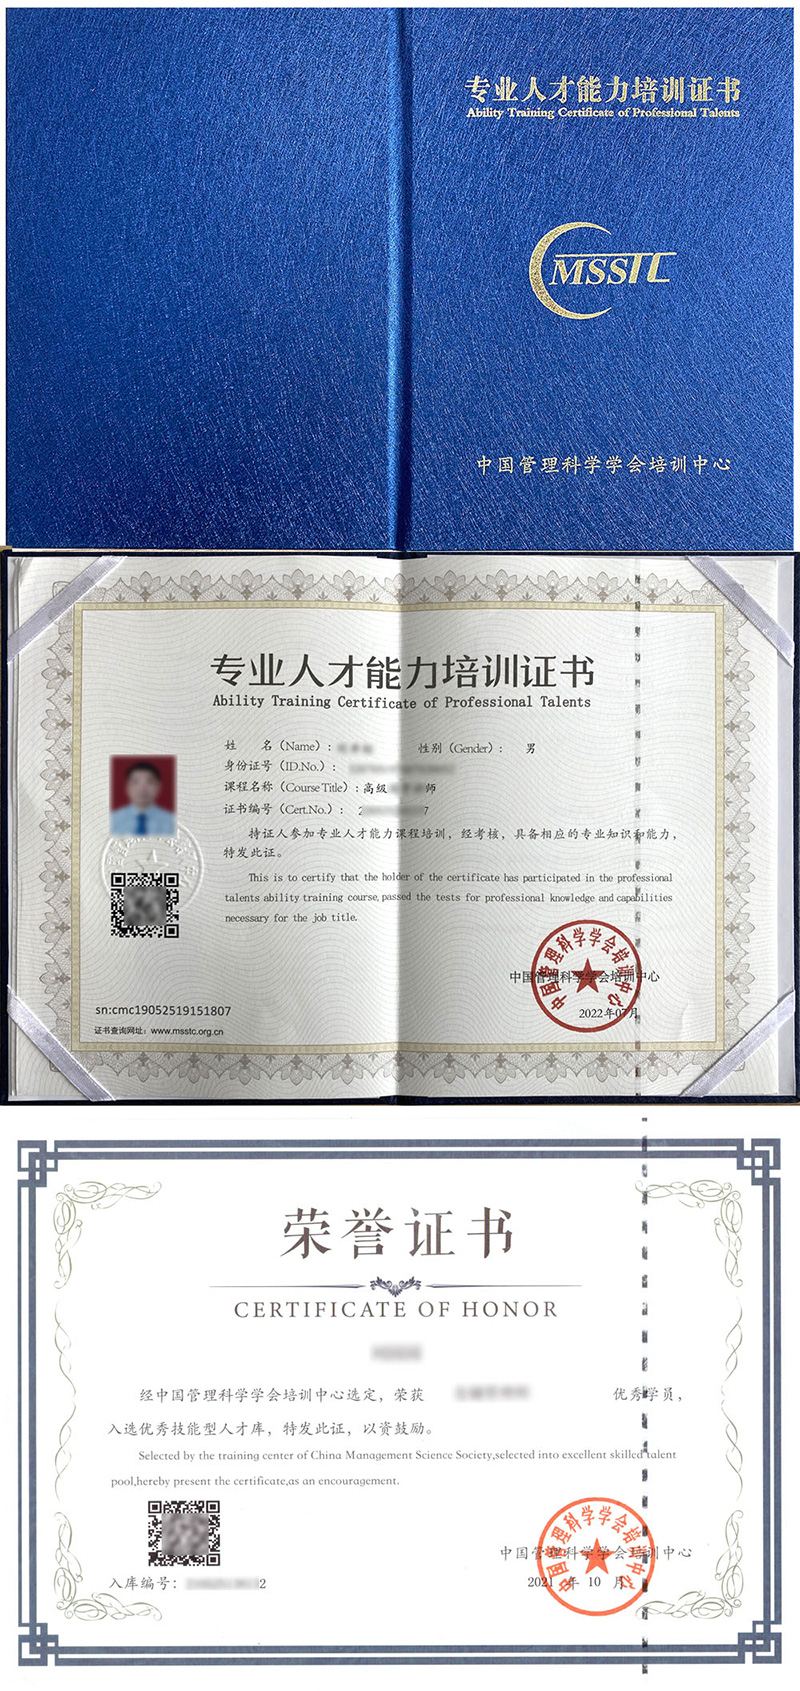 中国管理科学学会培训中心 专业人才能力培训证书 二手房估价师证证书样本